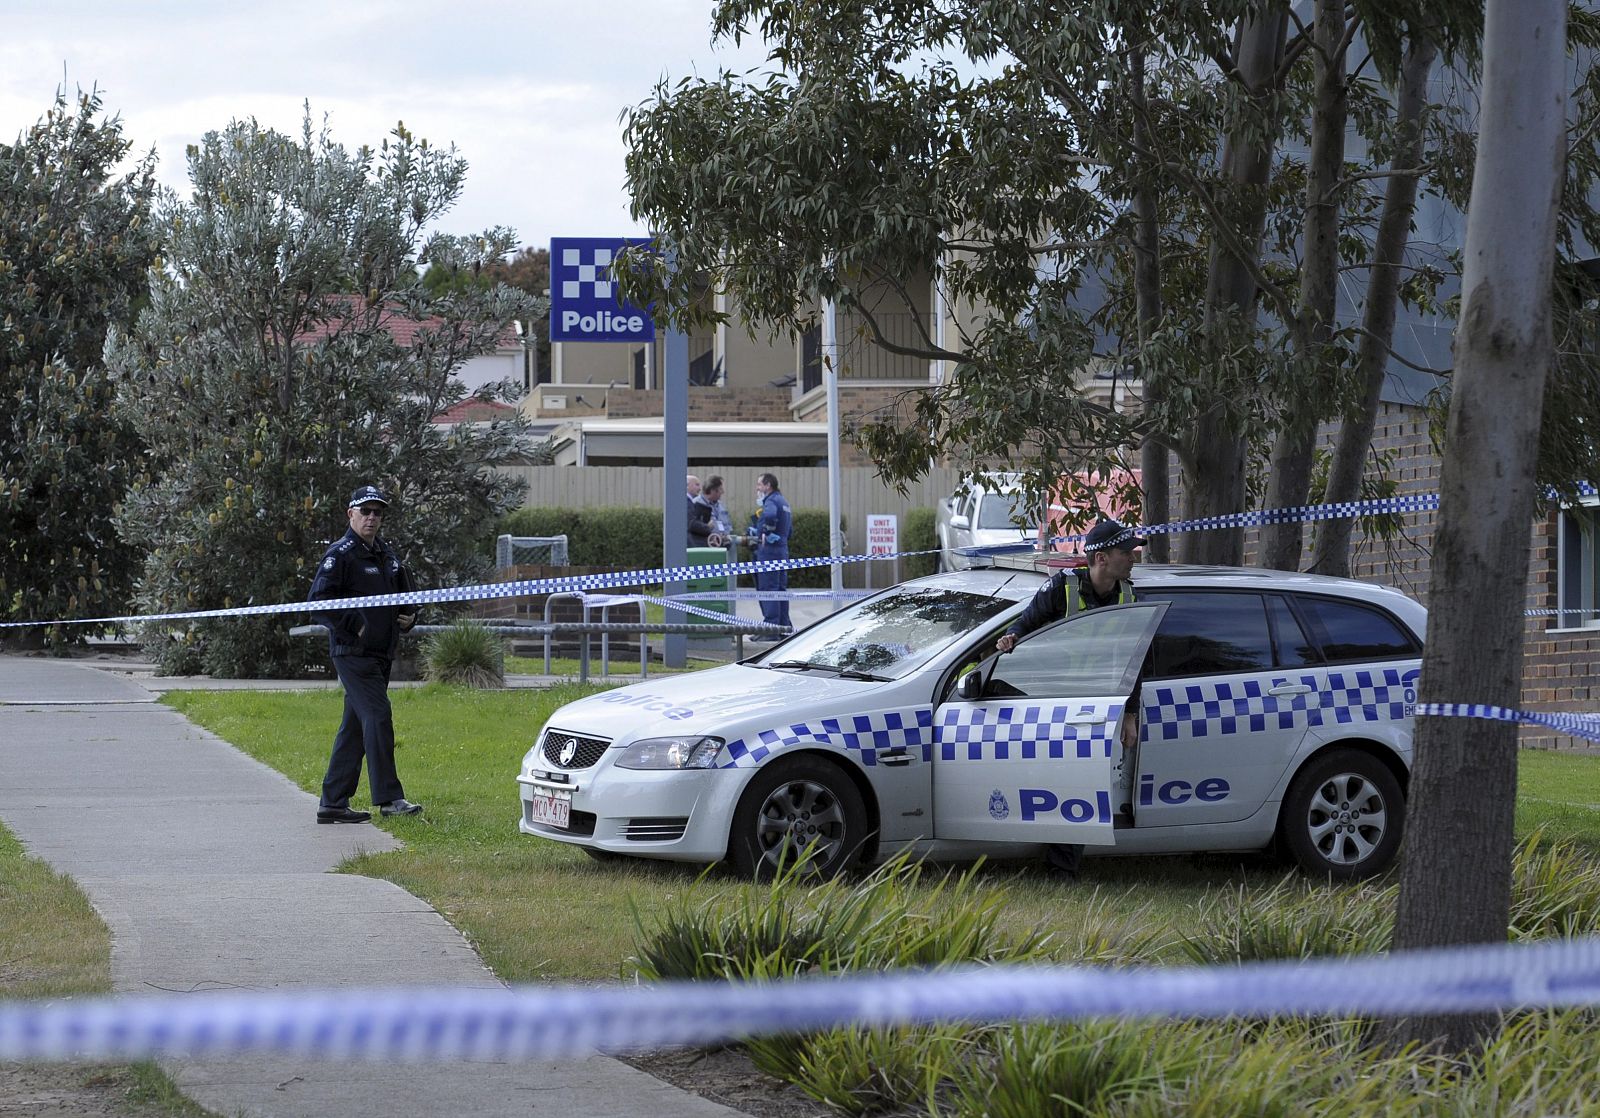 Forenses y Policía junto a la comisaría de Endevaour Hills, en Melbourne, Australia, donde los agentes han matado a un sospechoso de relación con el yihadismo